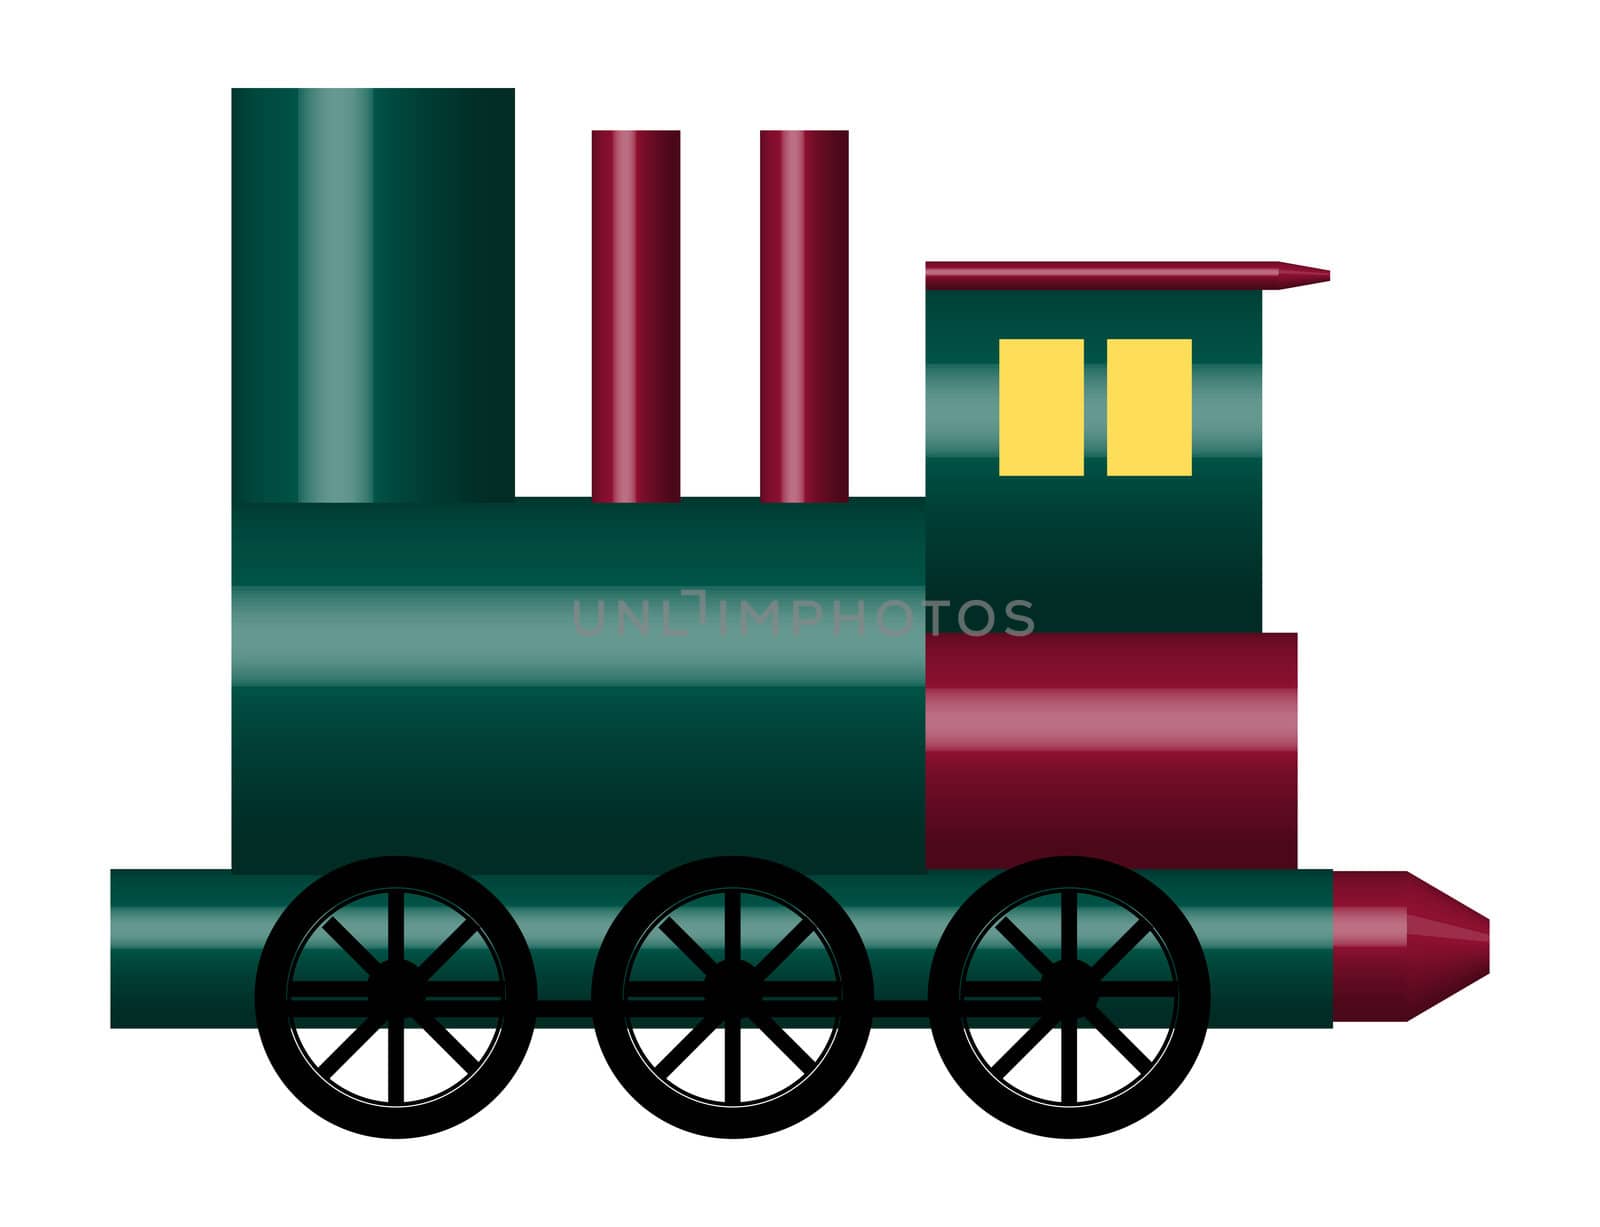 Toy Train by srnicholl